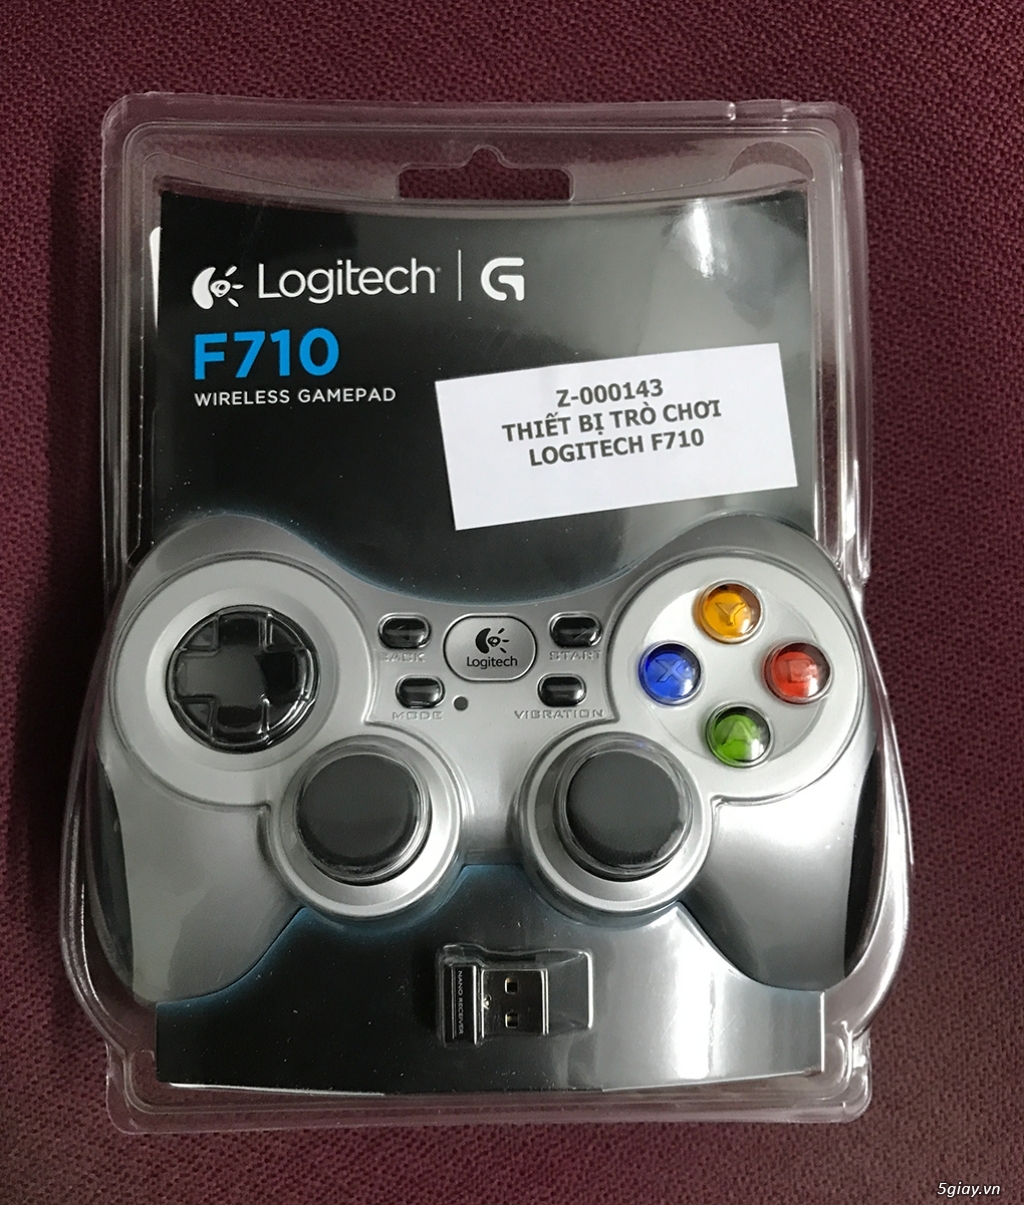 Tay cầm chơi game không dây Logitech F710 giá rẻ